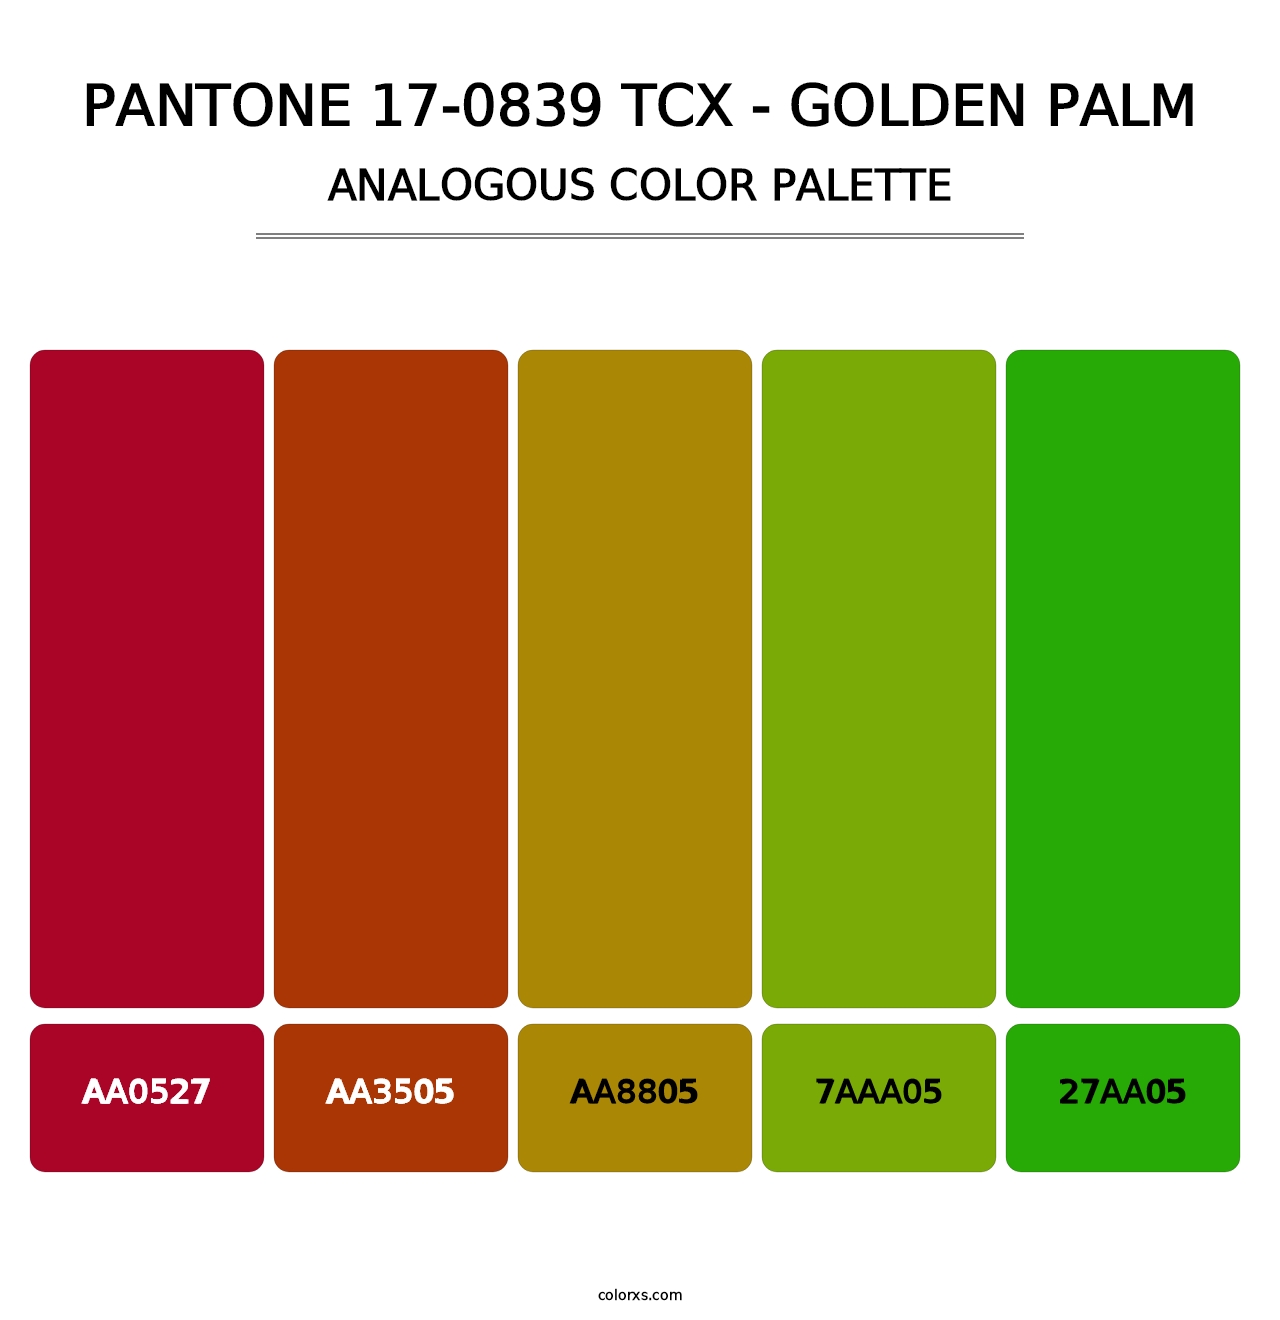 PANTONE 17-0839 TCX - Golden Palm - Analogous Color Palette